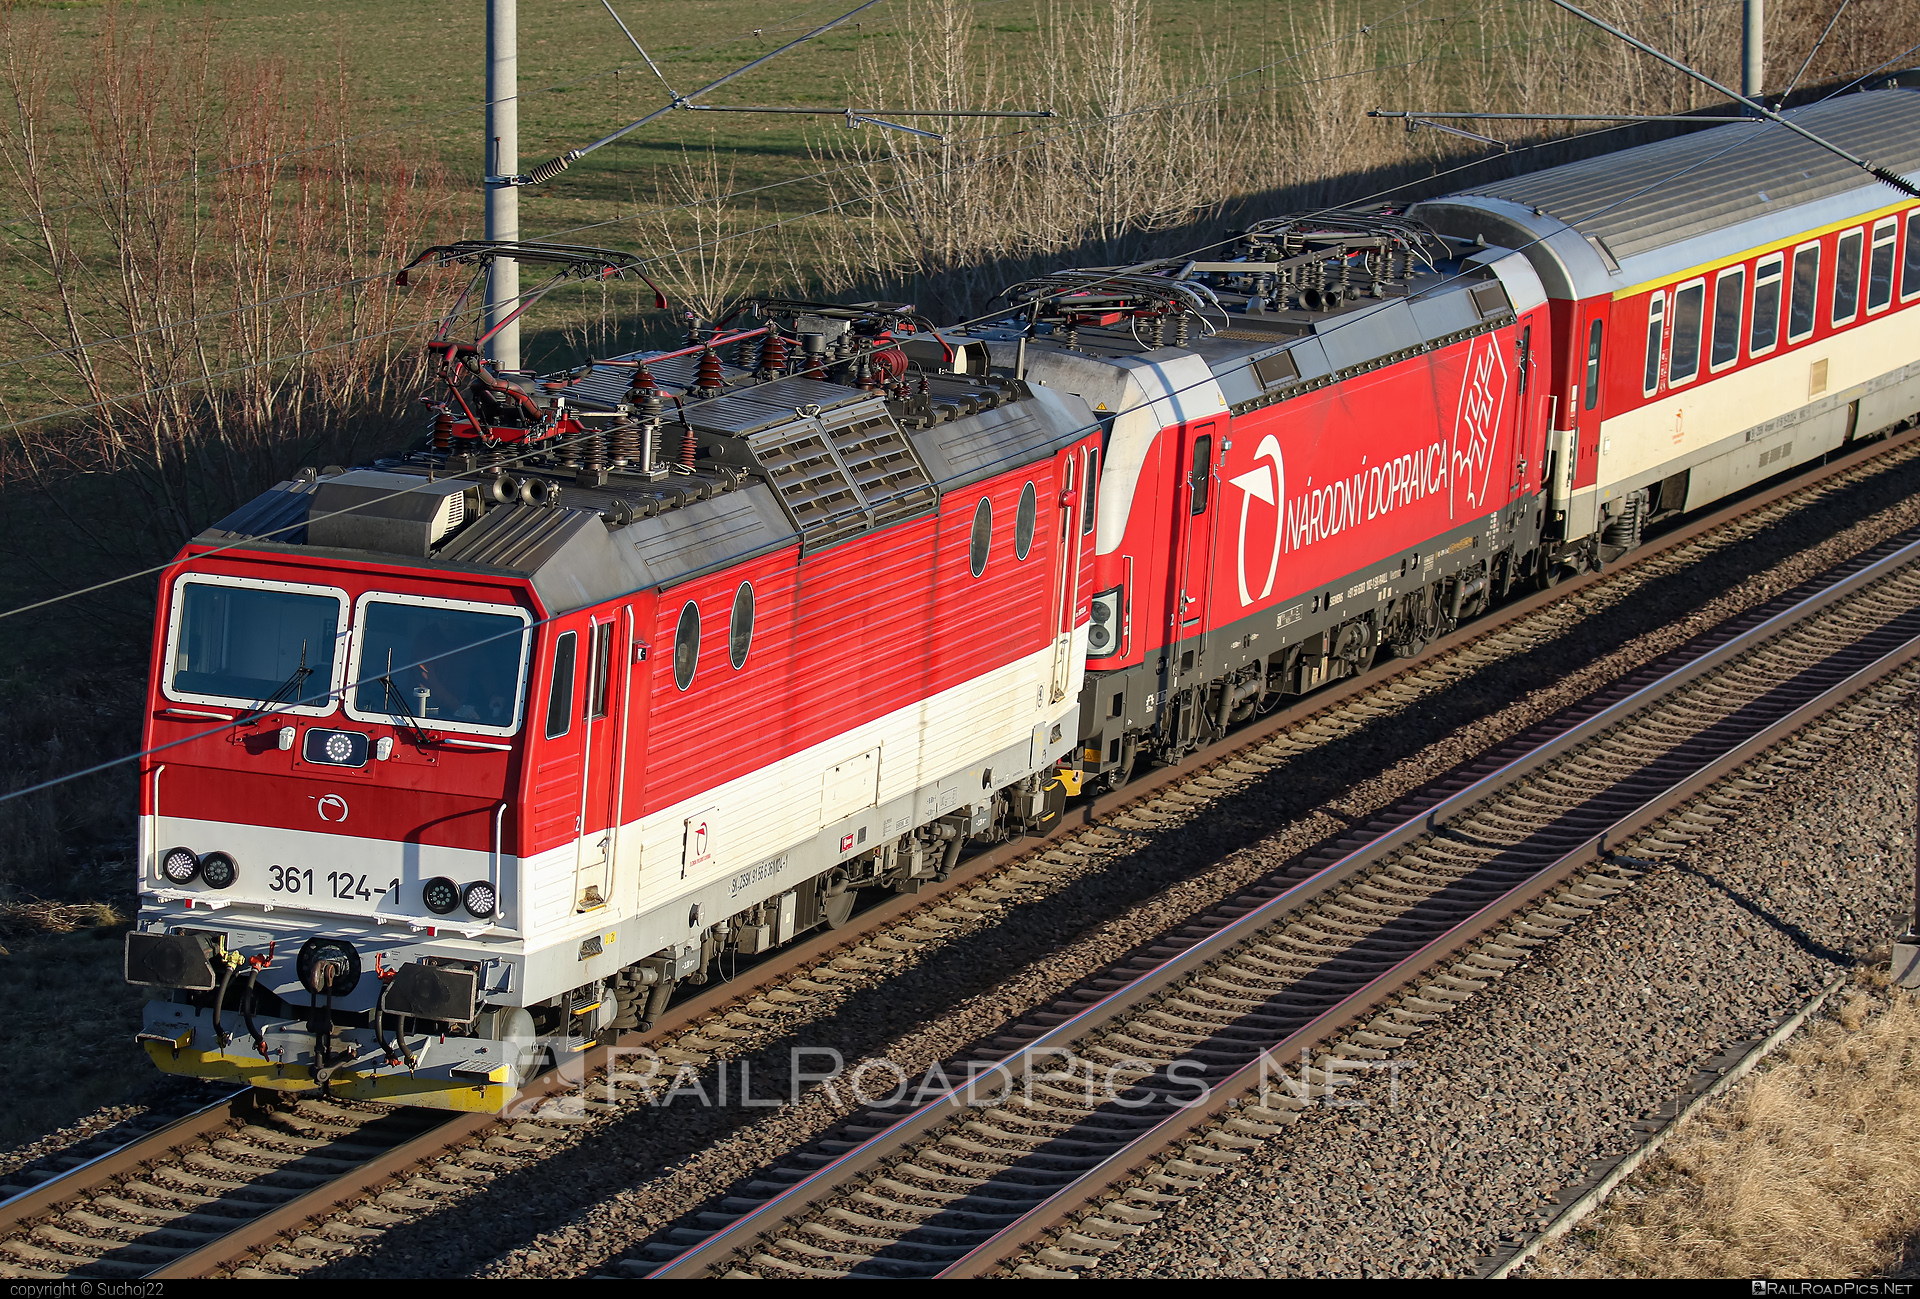 ŽOS Vrútky Class 361.1 - 361 124-1 operated by Železničná Spoločnost' Slovensko, a.s. #ZeleznicnaSpolocnostSlovensko #locomotive361 #locomotive3611 #zosvrutky #zssk